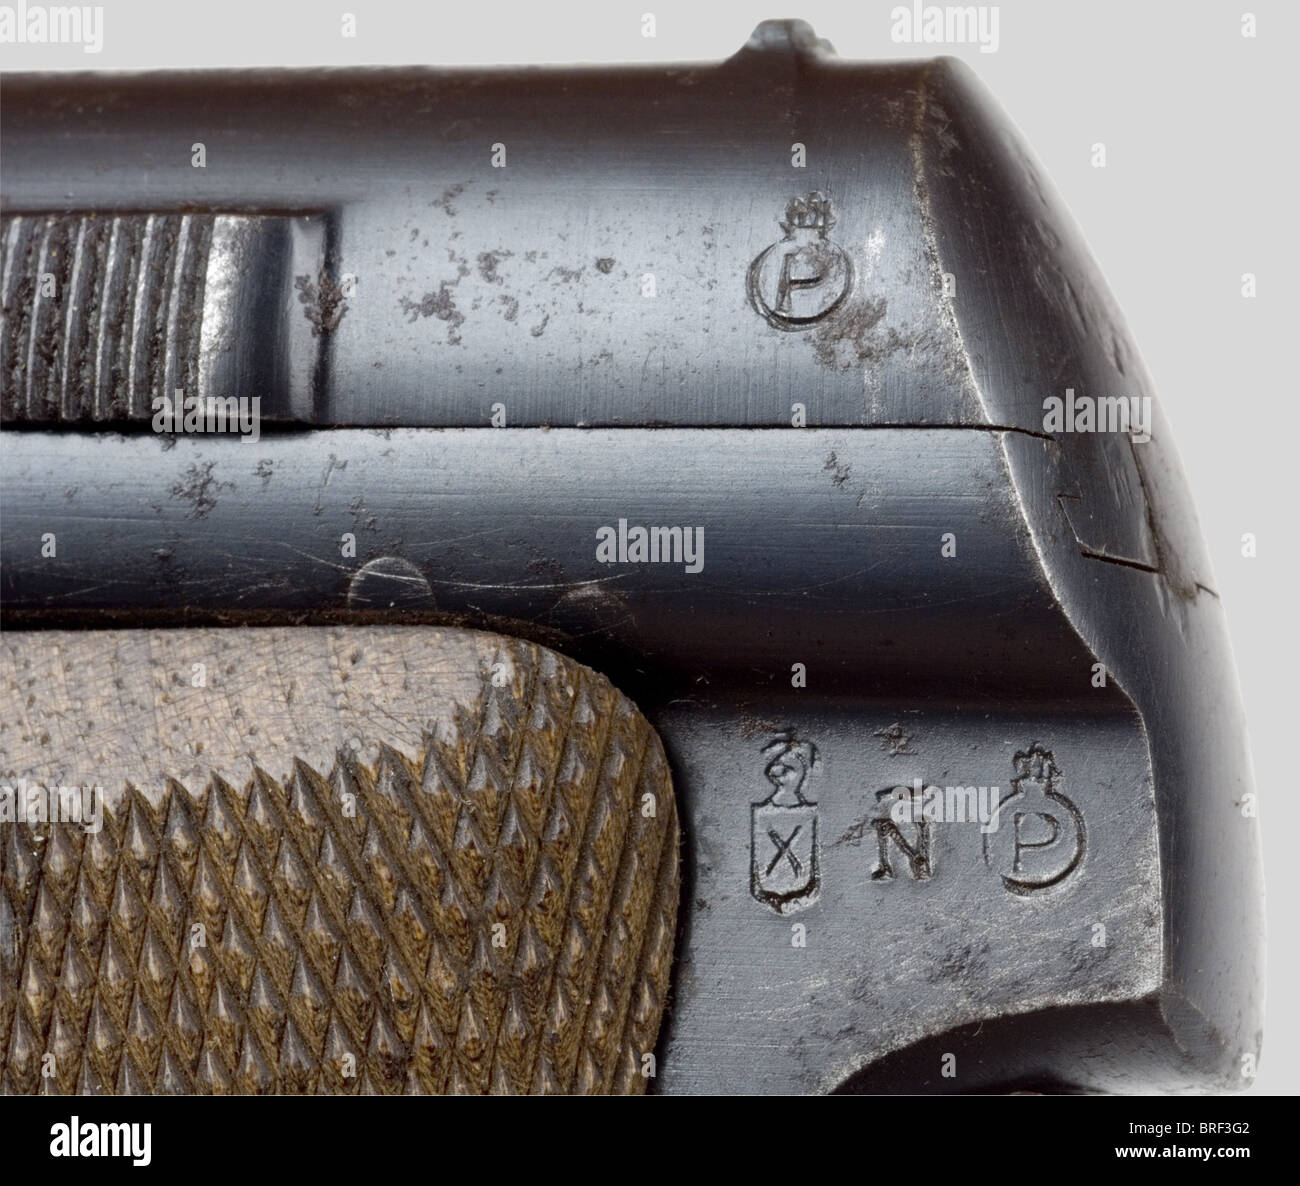 Armes à feu, Pistolet Espagnol Astra 300, calibre 9mm court, no. 587206,  sous contrat pour l'Armée Allemande: poinçon "WaA.251" frappé à l'arrière  de la glissière sur le côté droit. Dans son étui